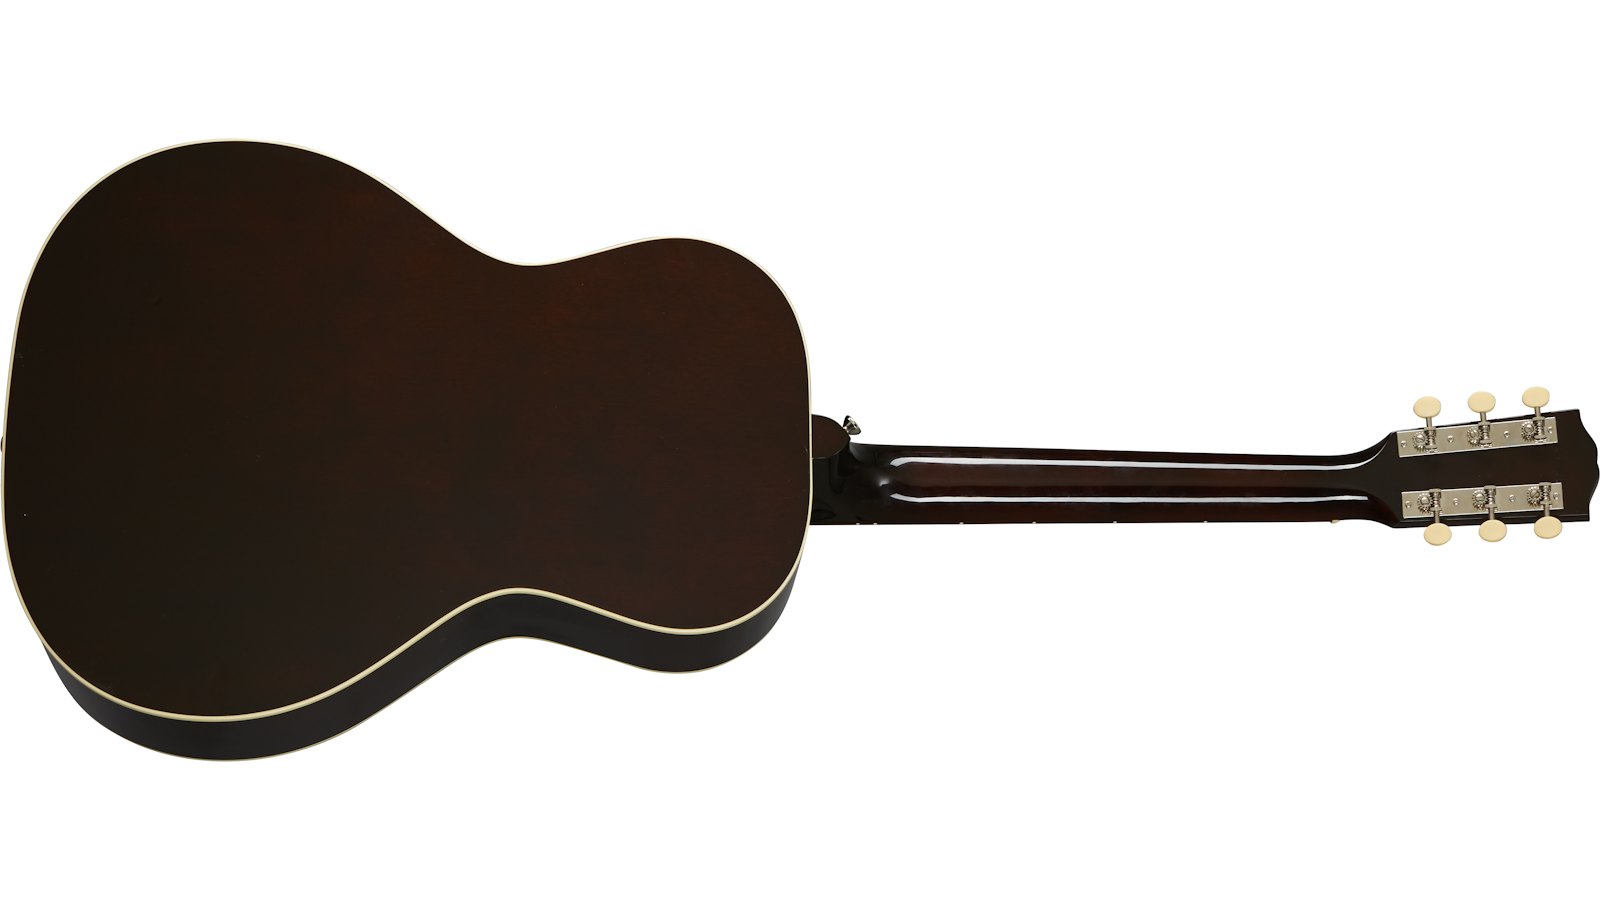 Gibson L-00 Original Lh 2020 Parlor Gaucher Epicea Acajou Rw - Vintage Sunburst - Elektroakustische Gitarre - Variation 1